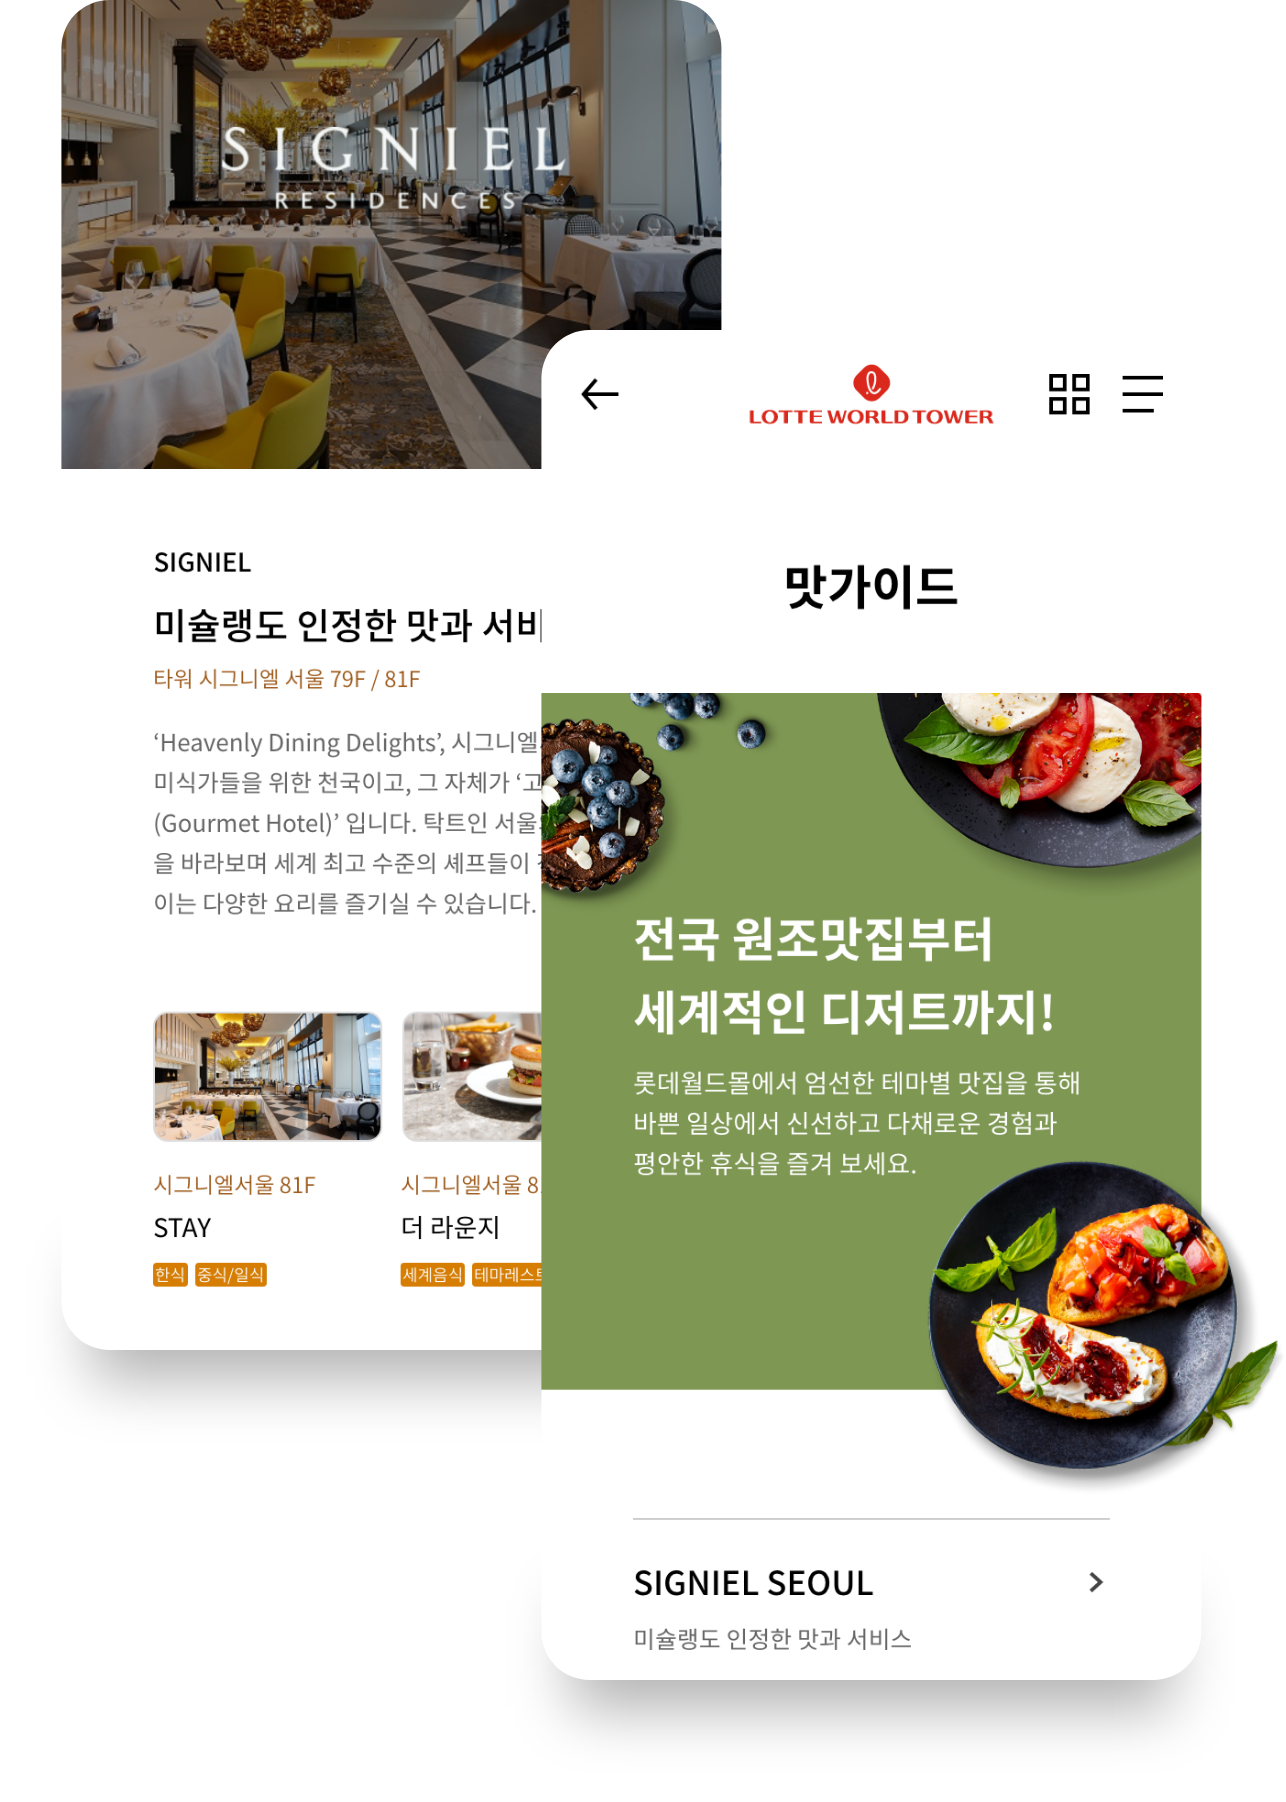 롯데월드타워몰의 핫플레이스 맛집거리에 대한 정보와 맛가이드 서비스